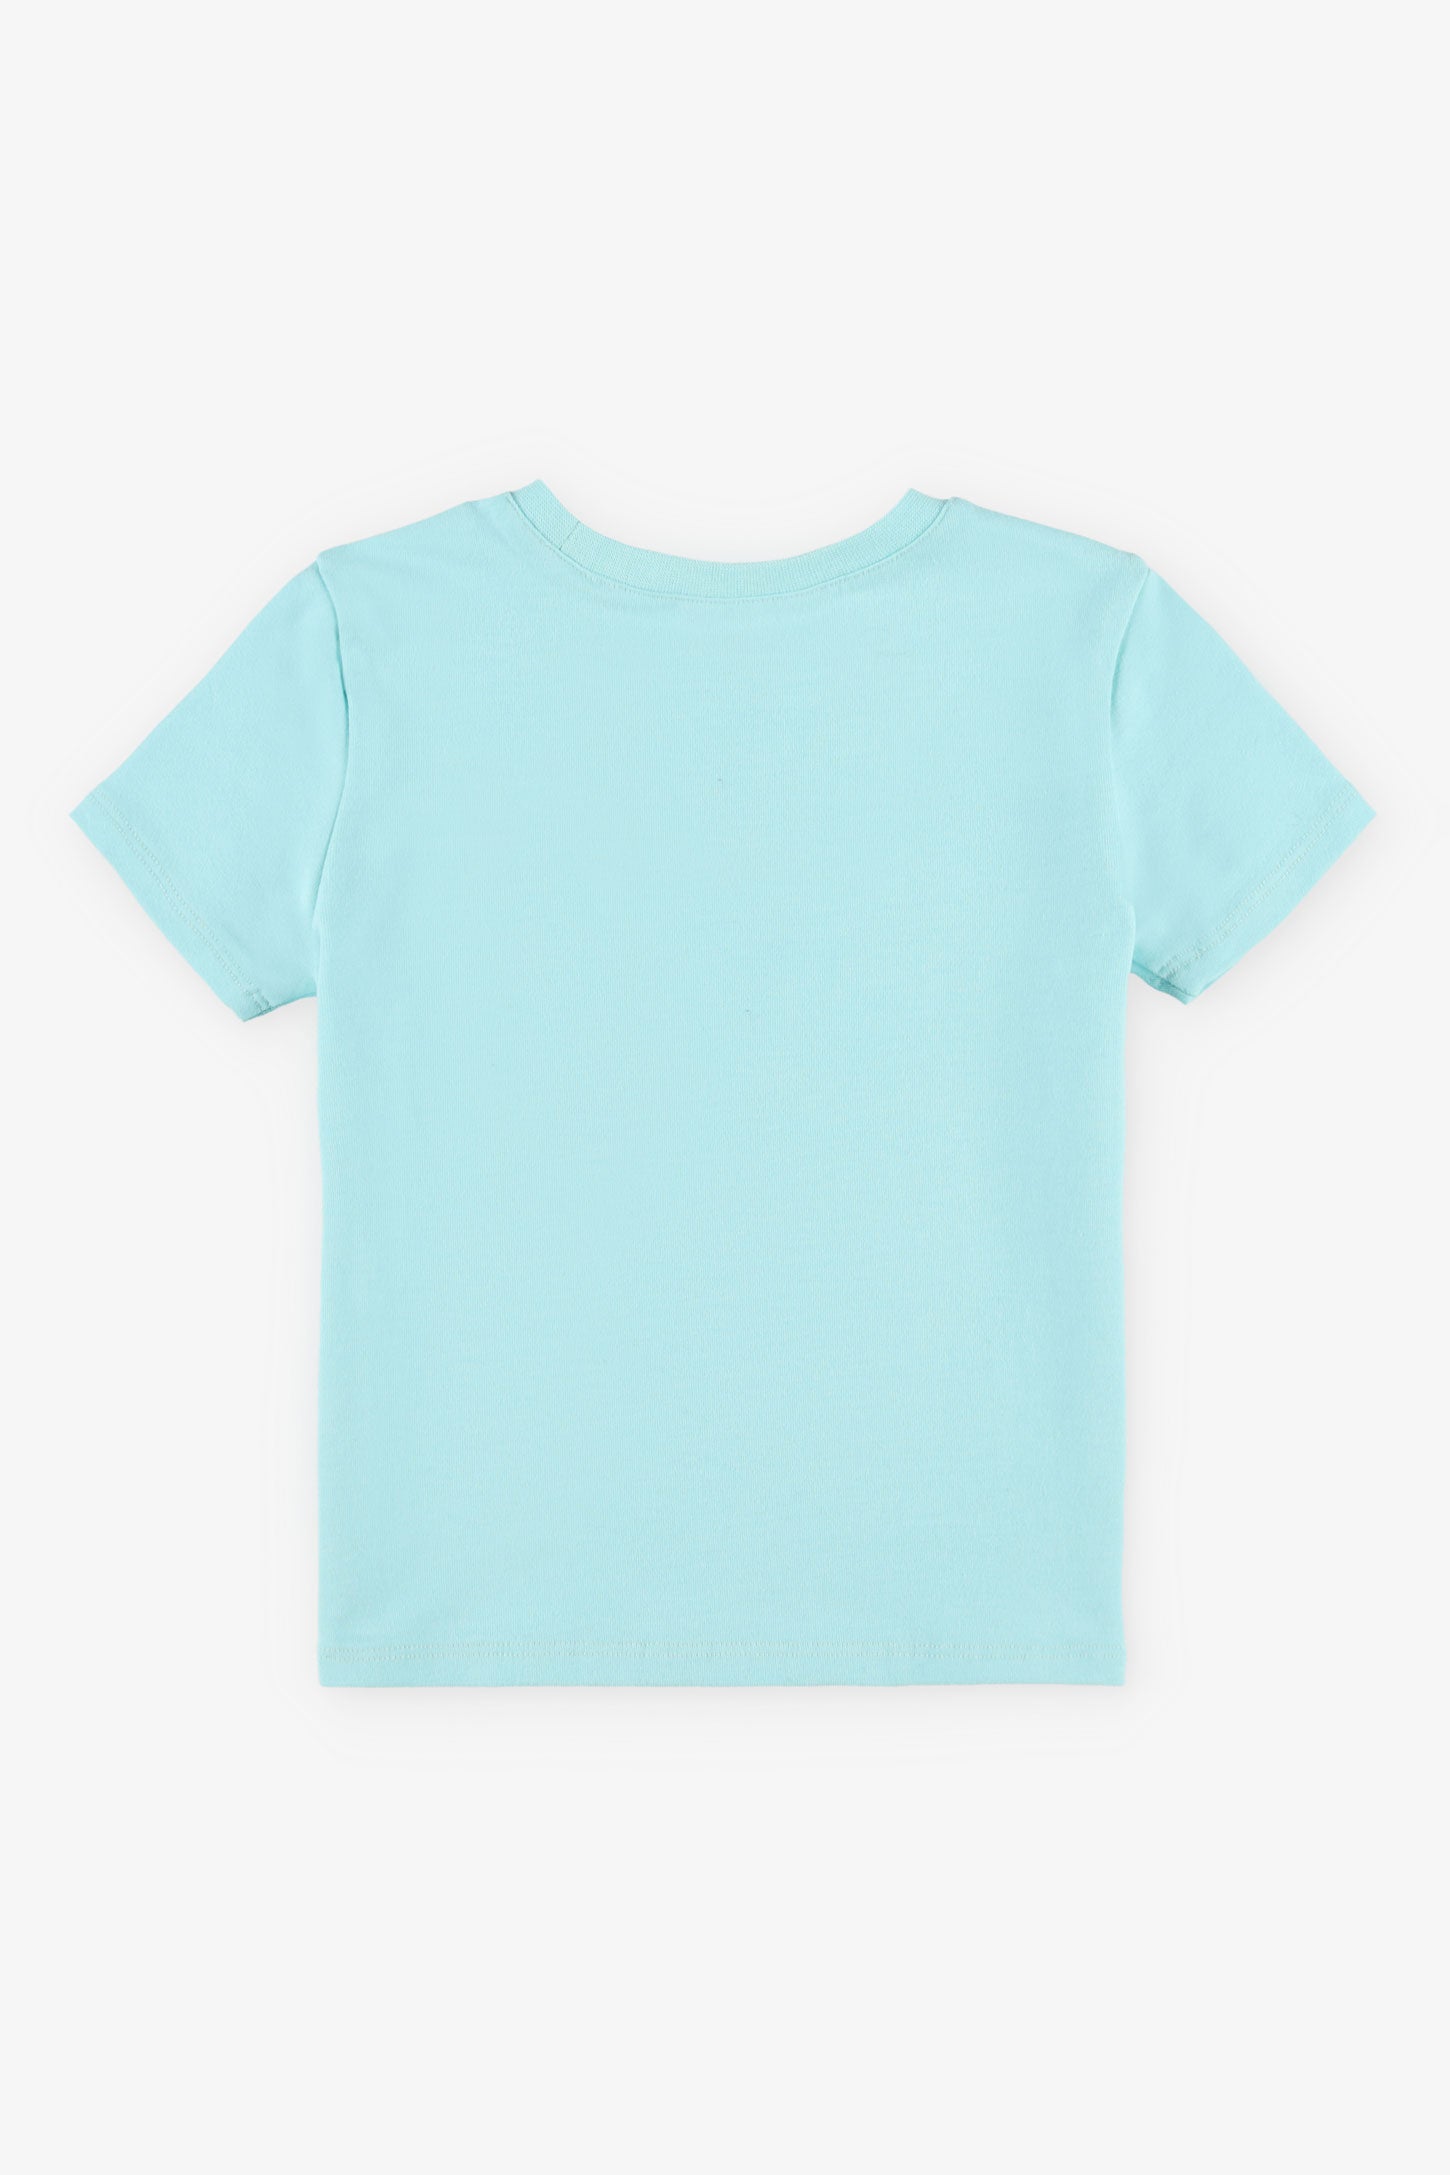 T-shirt rond coupe droite coton, 2T-3T, 2/15$ - Bébé garçon && TURQUOISE